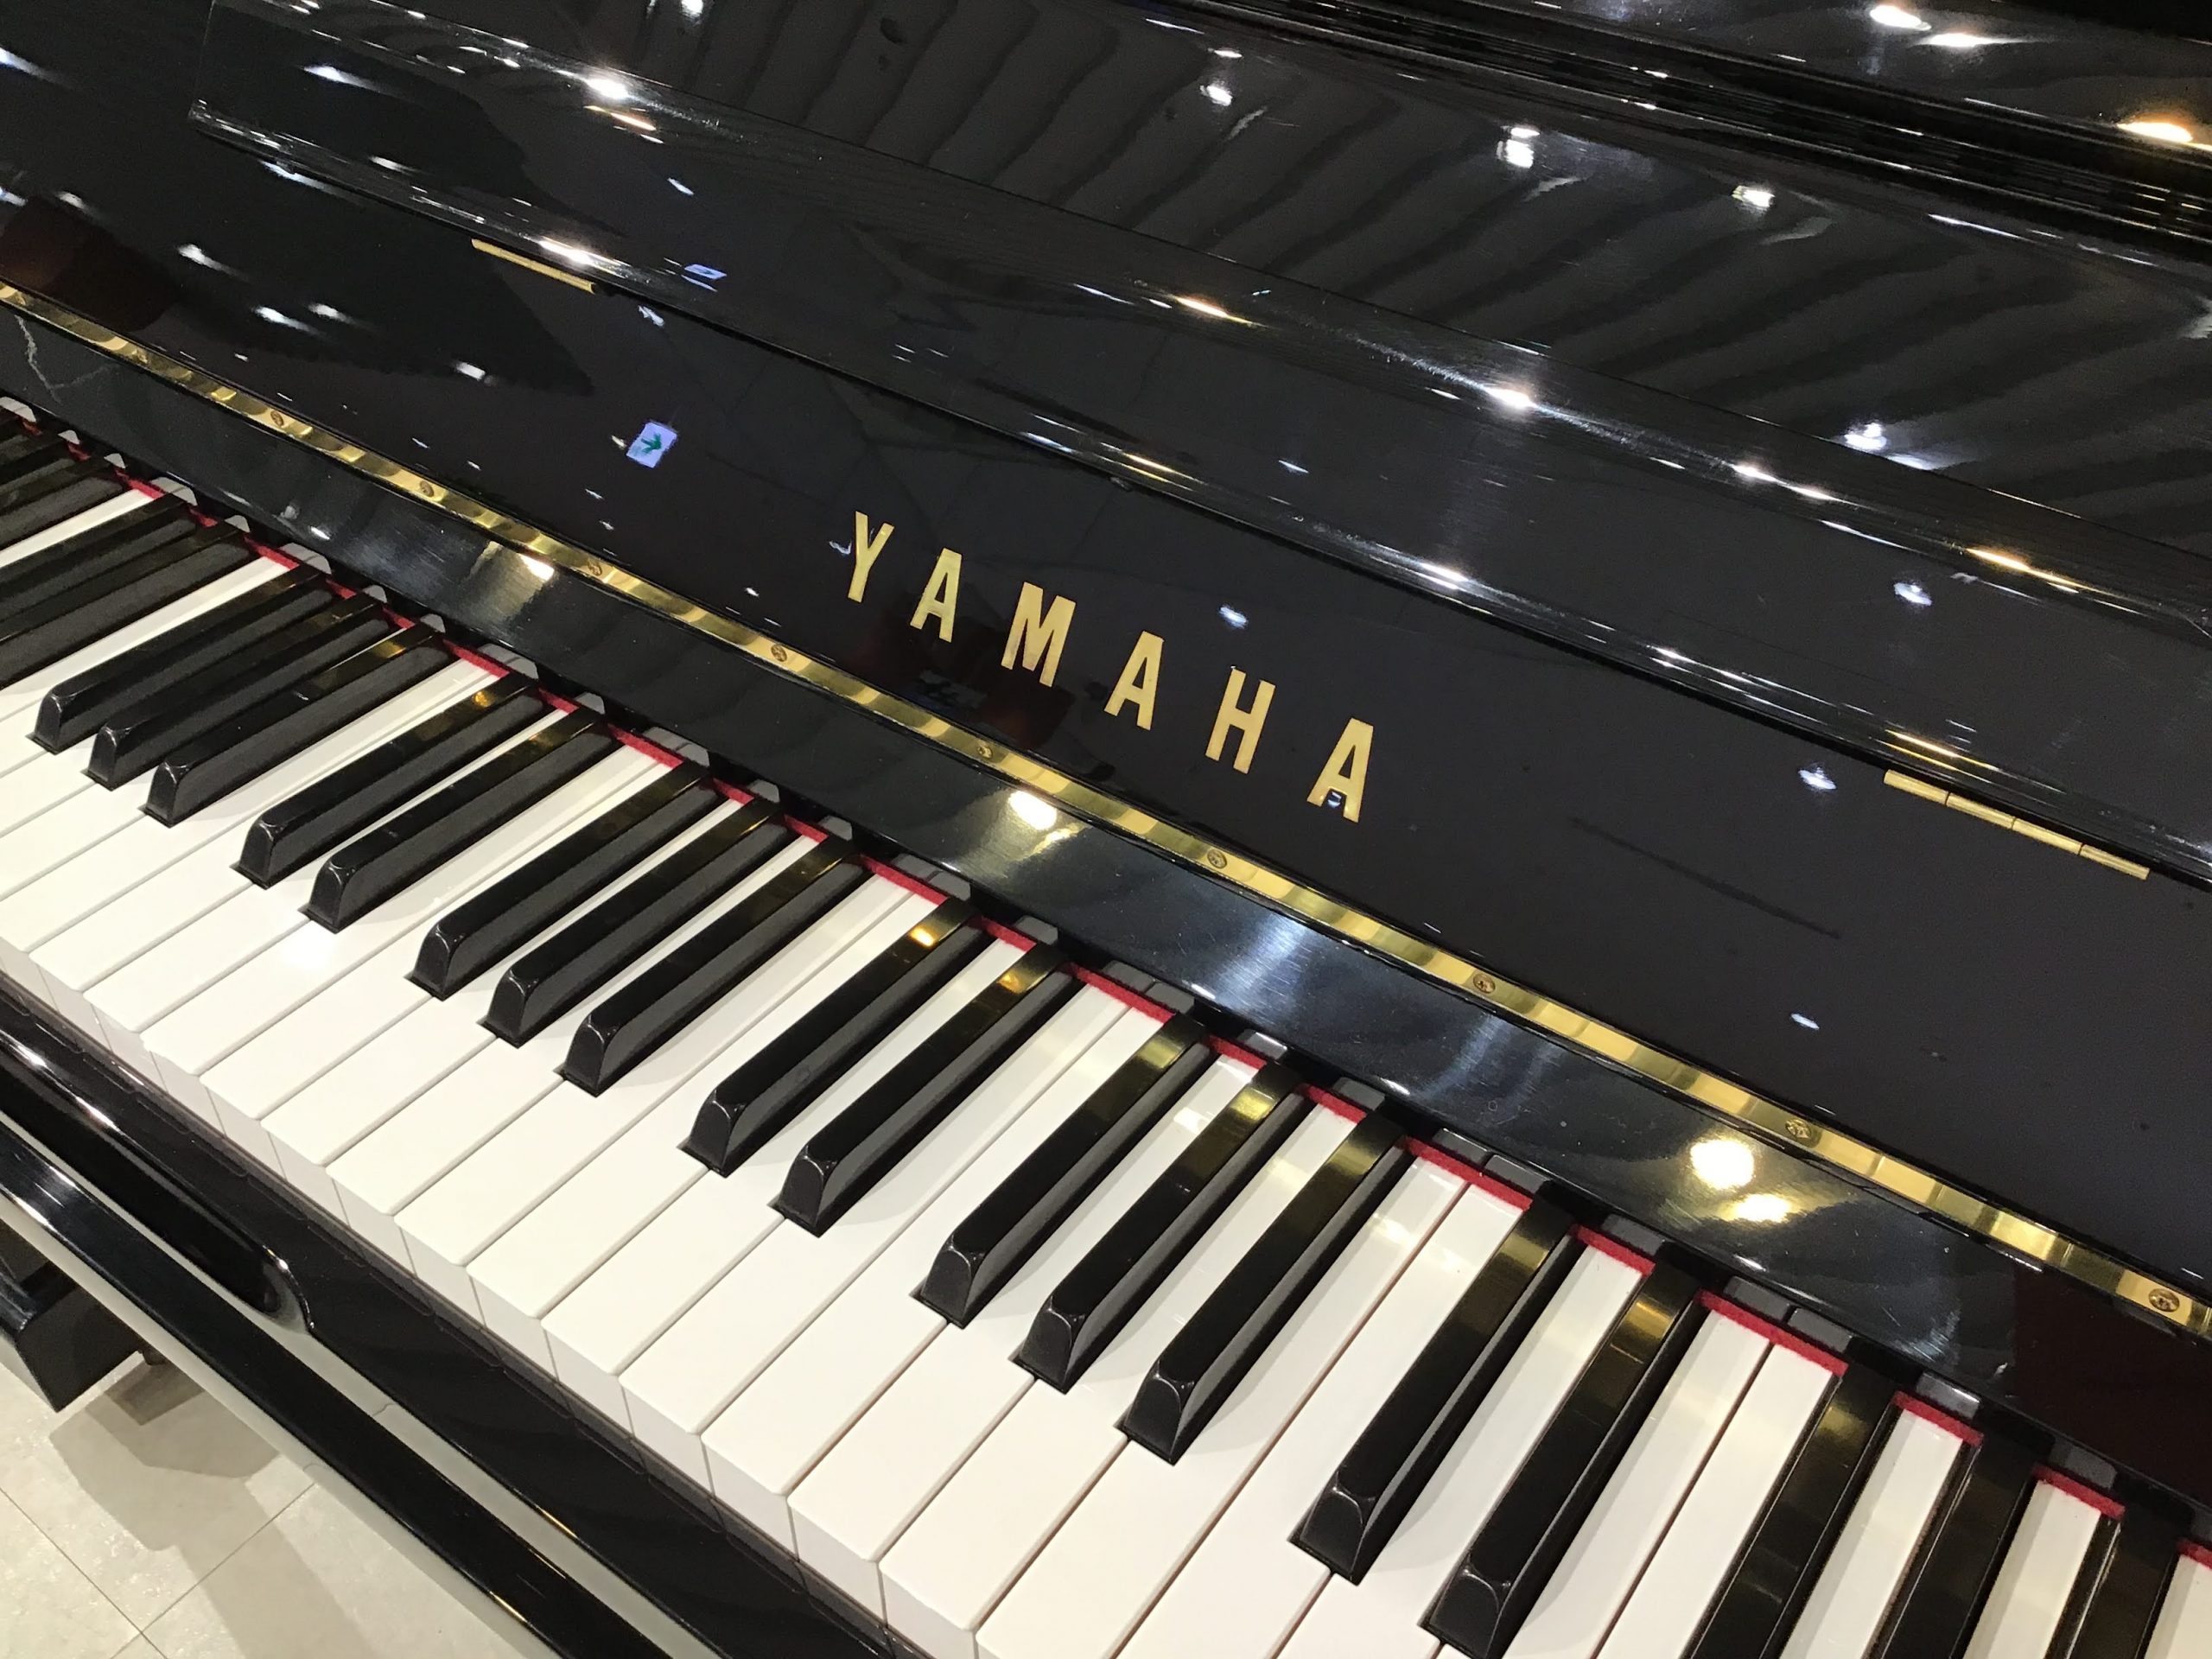 中古ピアノ】ヤマハ U10Aのご紹介（#5239660）～1993年製モデル 